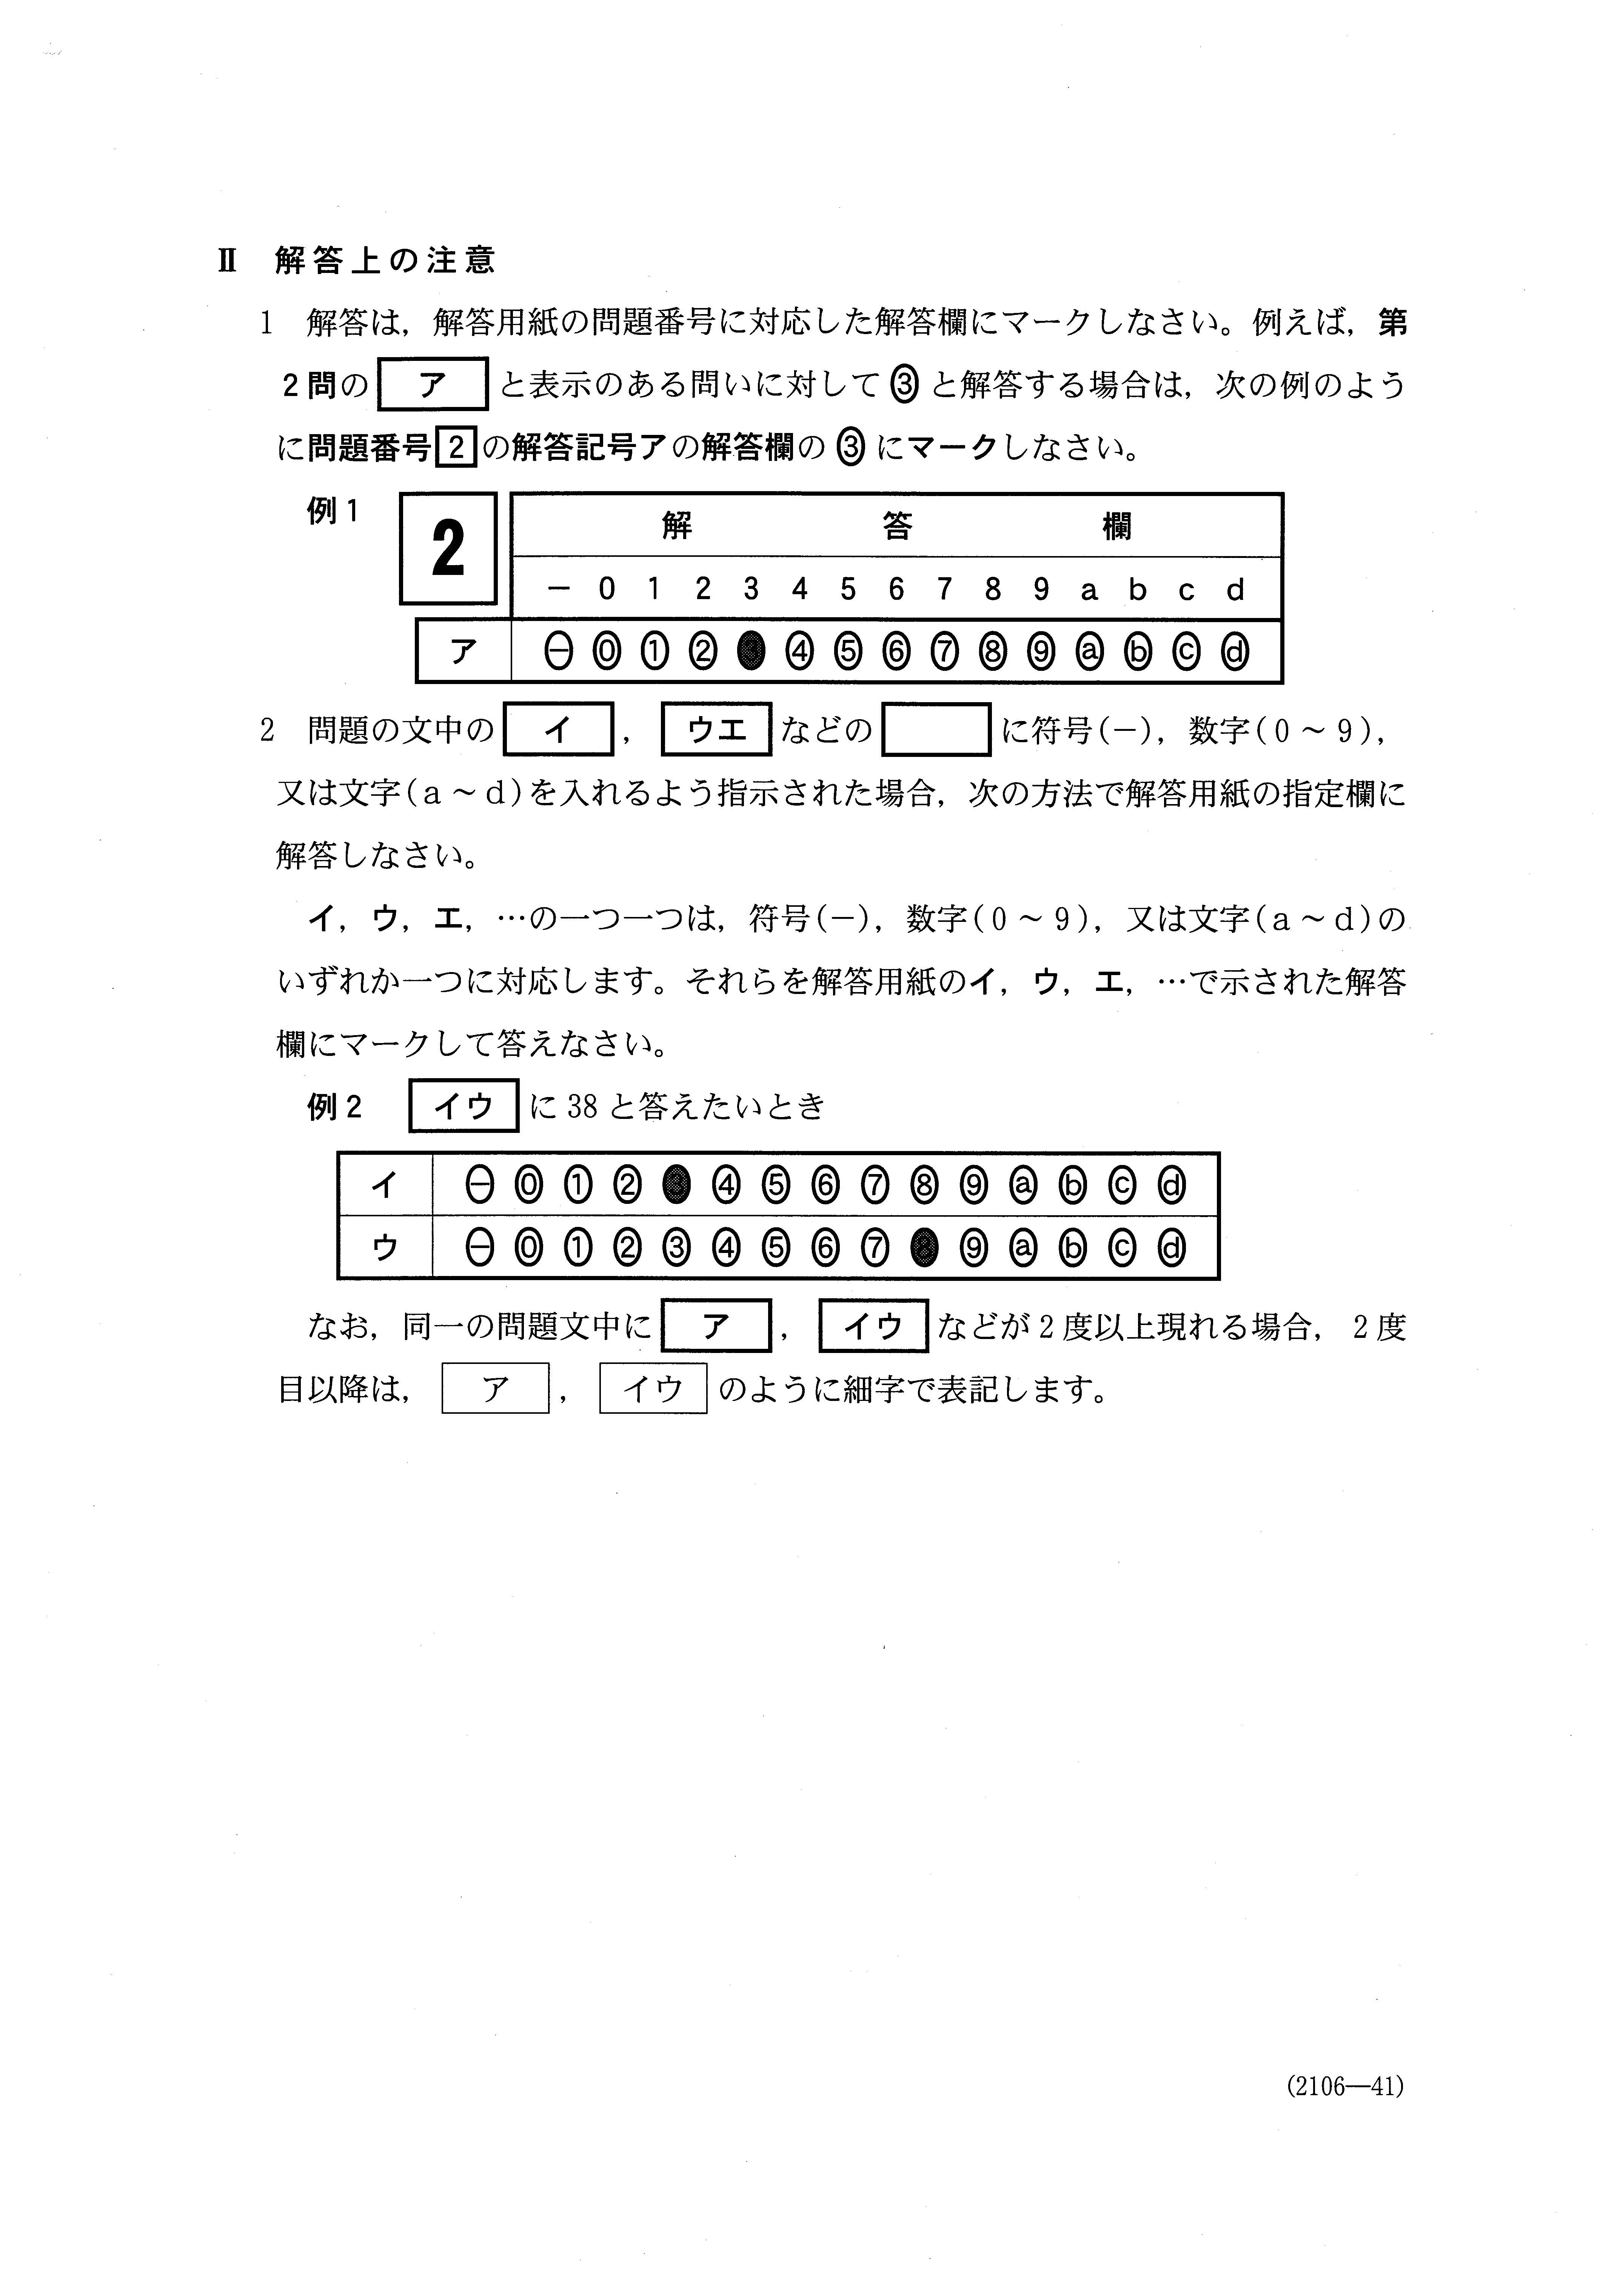 H30数学_別冊 簿記・会計 大学入試センター試験過去問